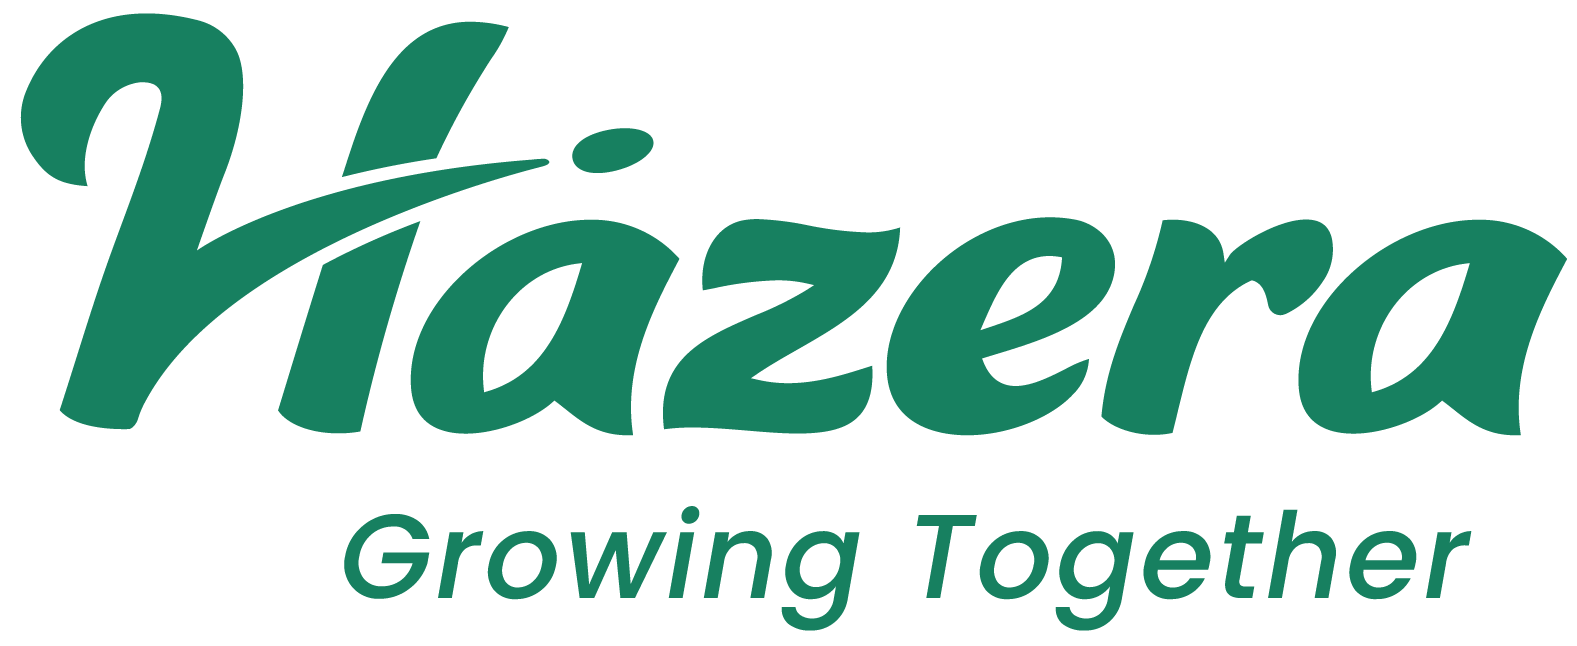 Hazera Seeds Ltd